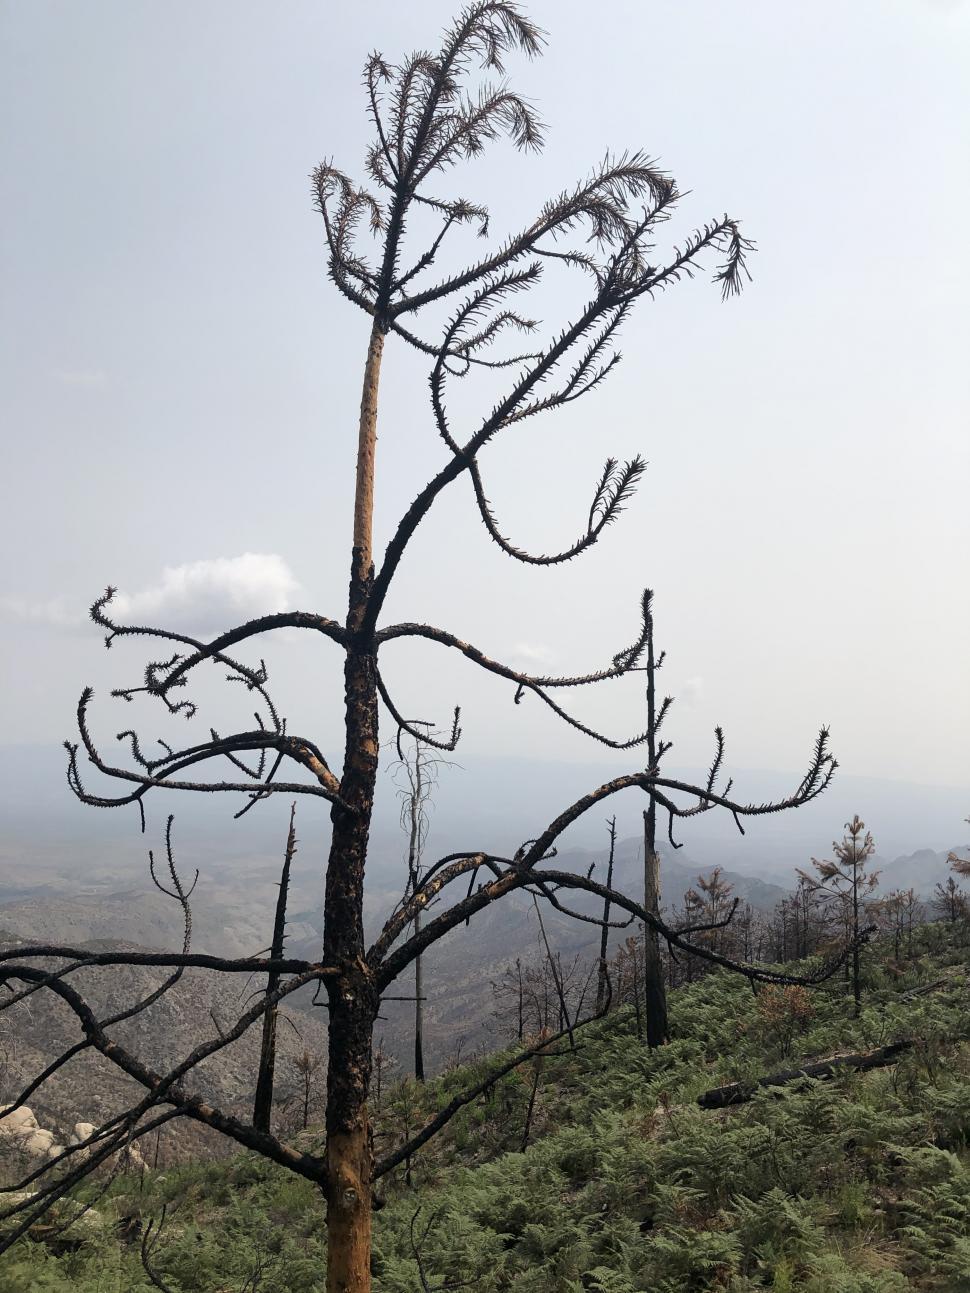 Free Image of Burned Tree 